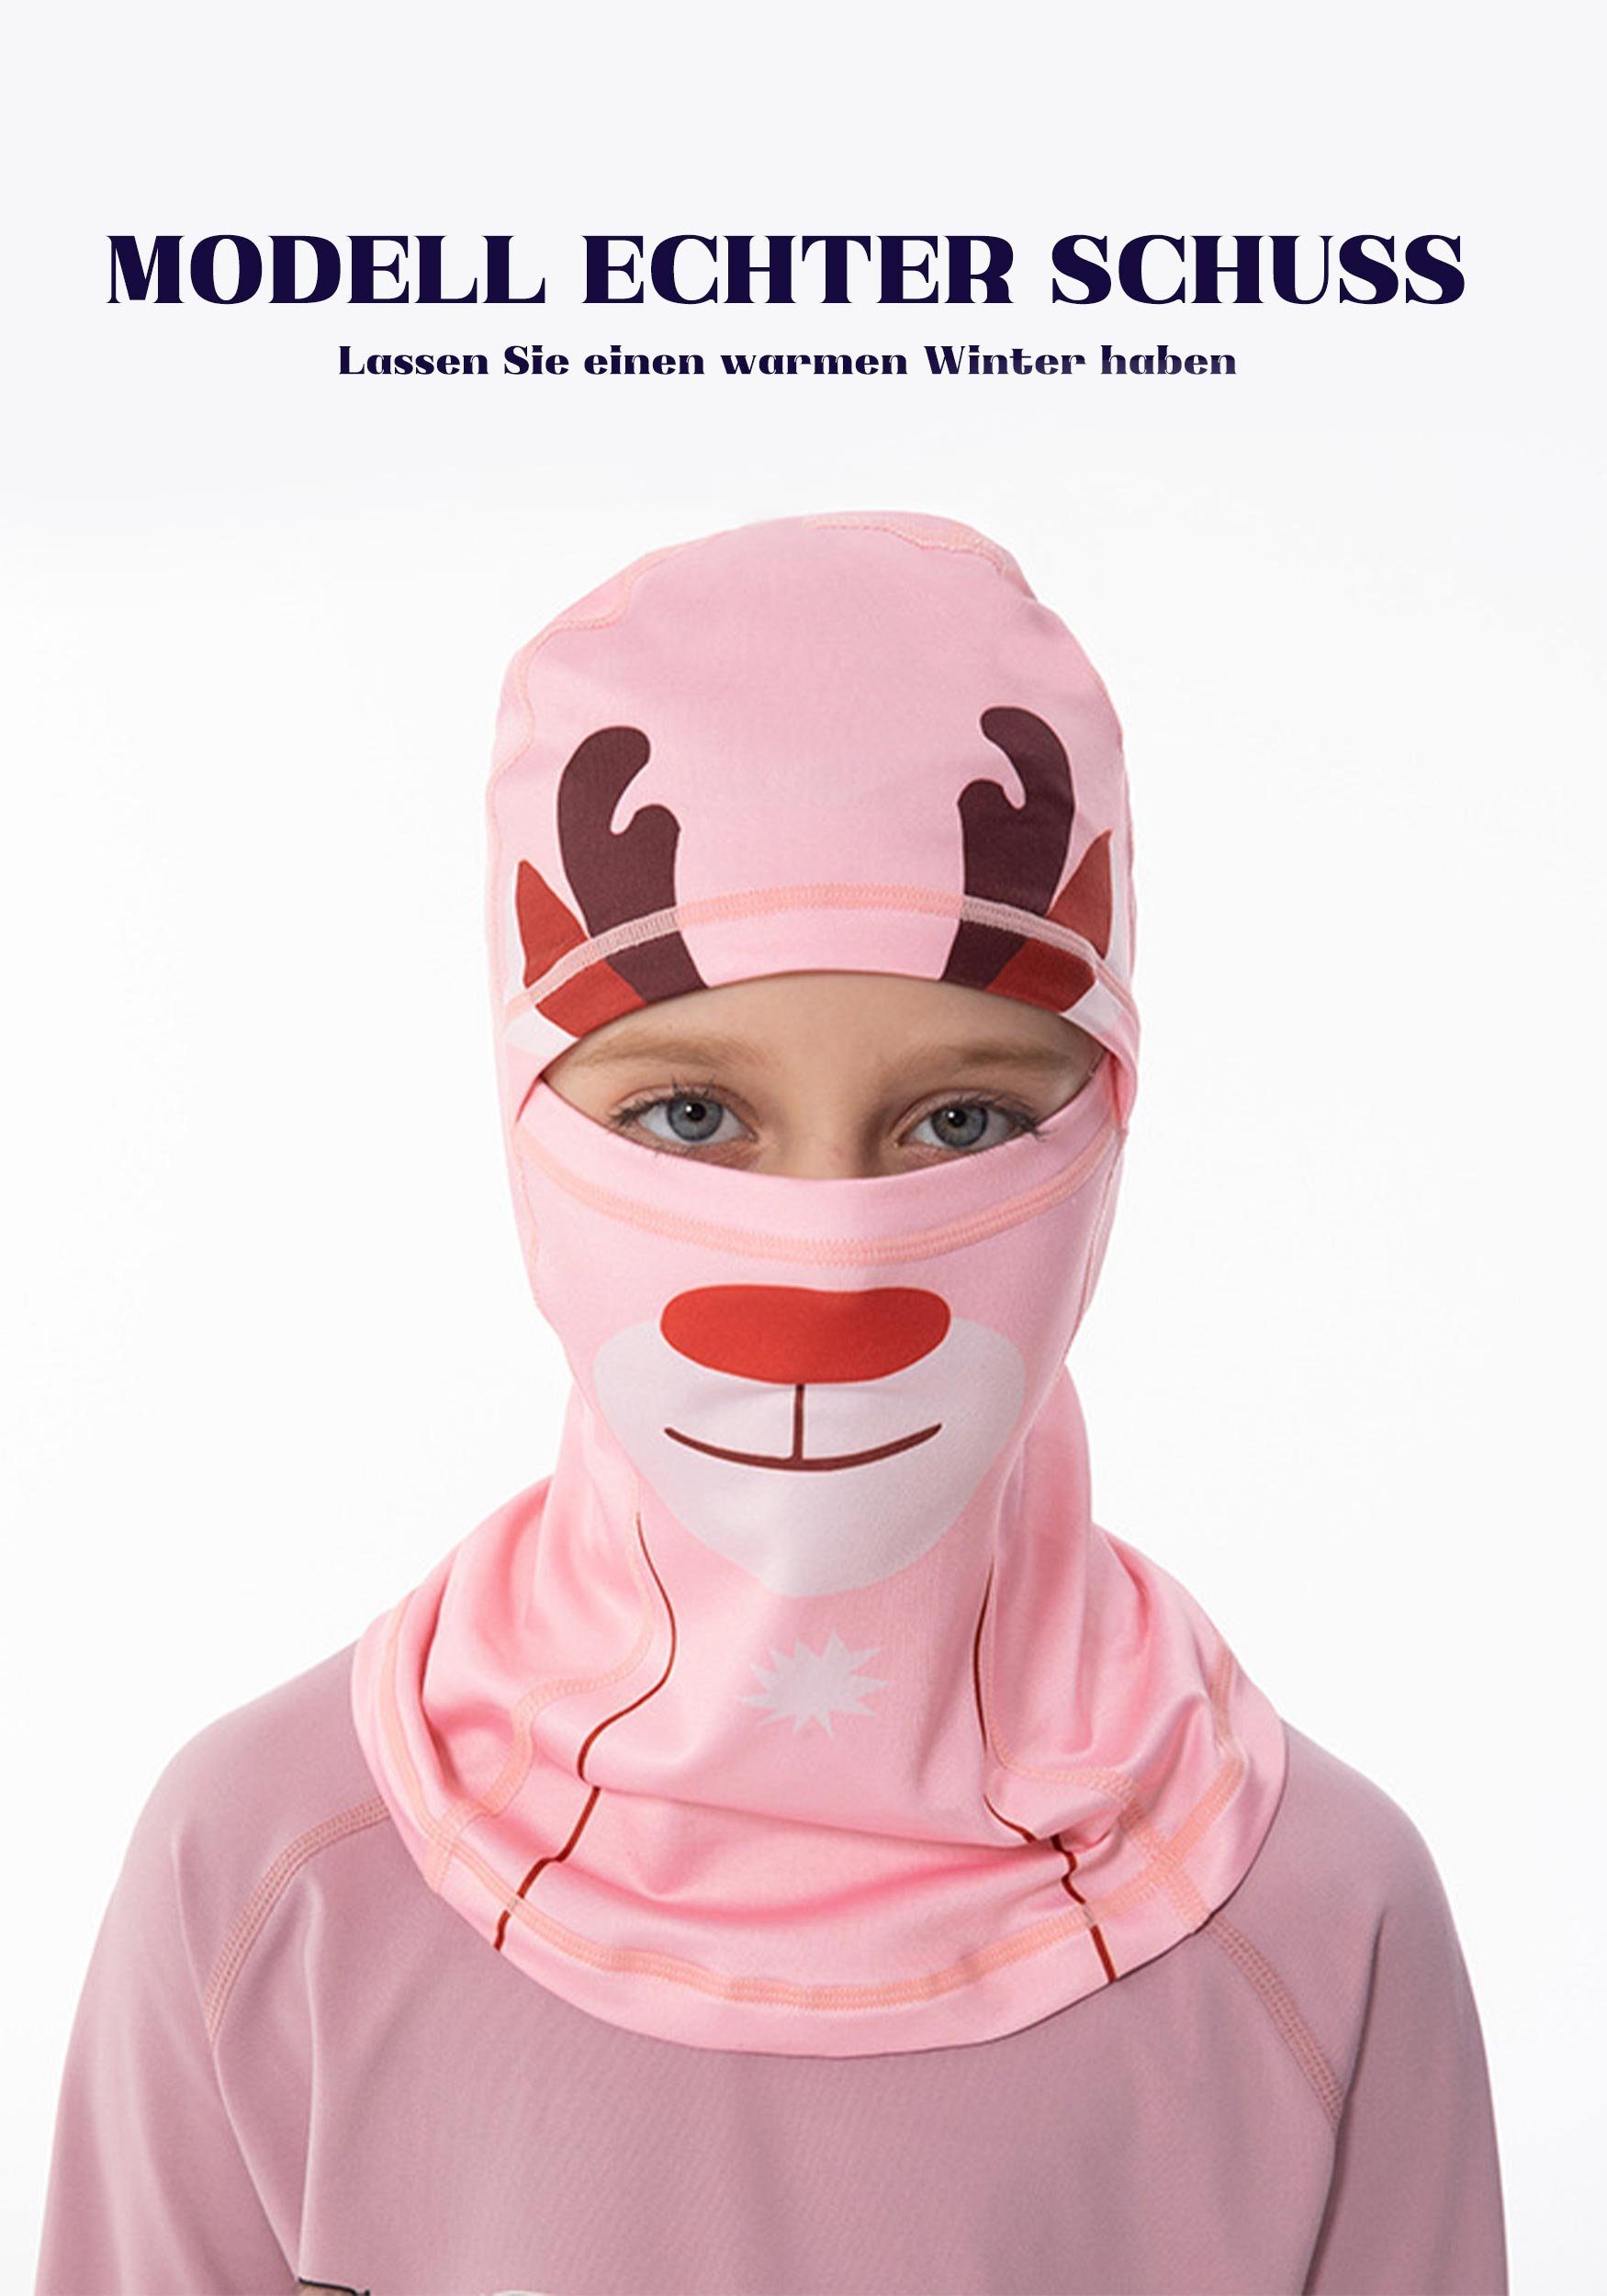 MAGICSHE Sturmhaube Skimaske für Widersteht Hellrosa-2 UV-Strahlen Schutz Umfassenden